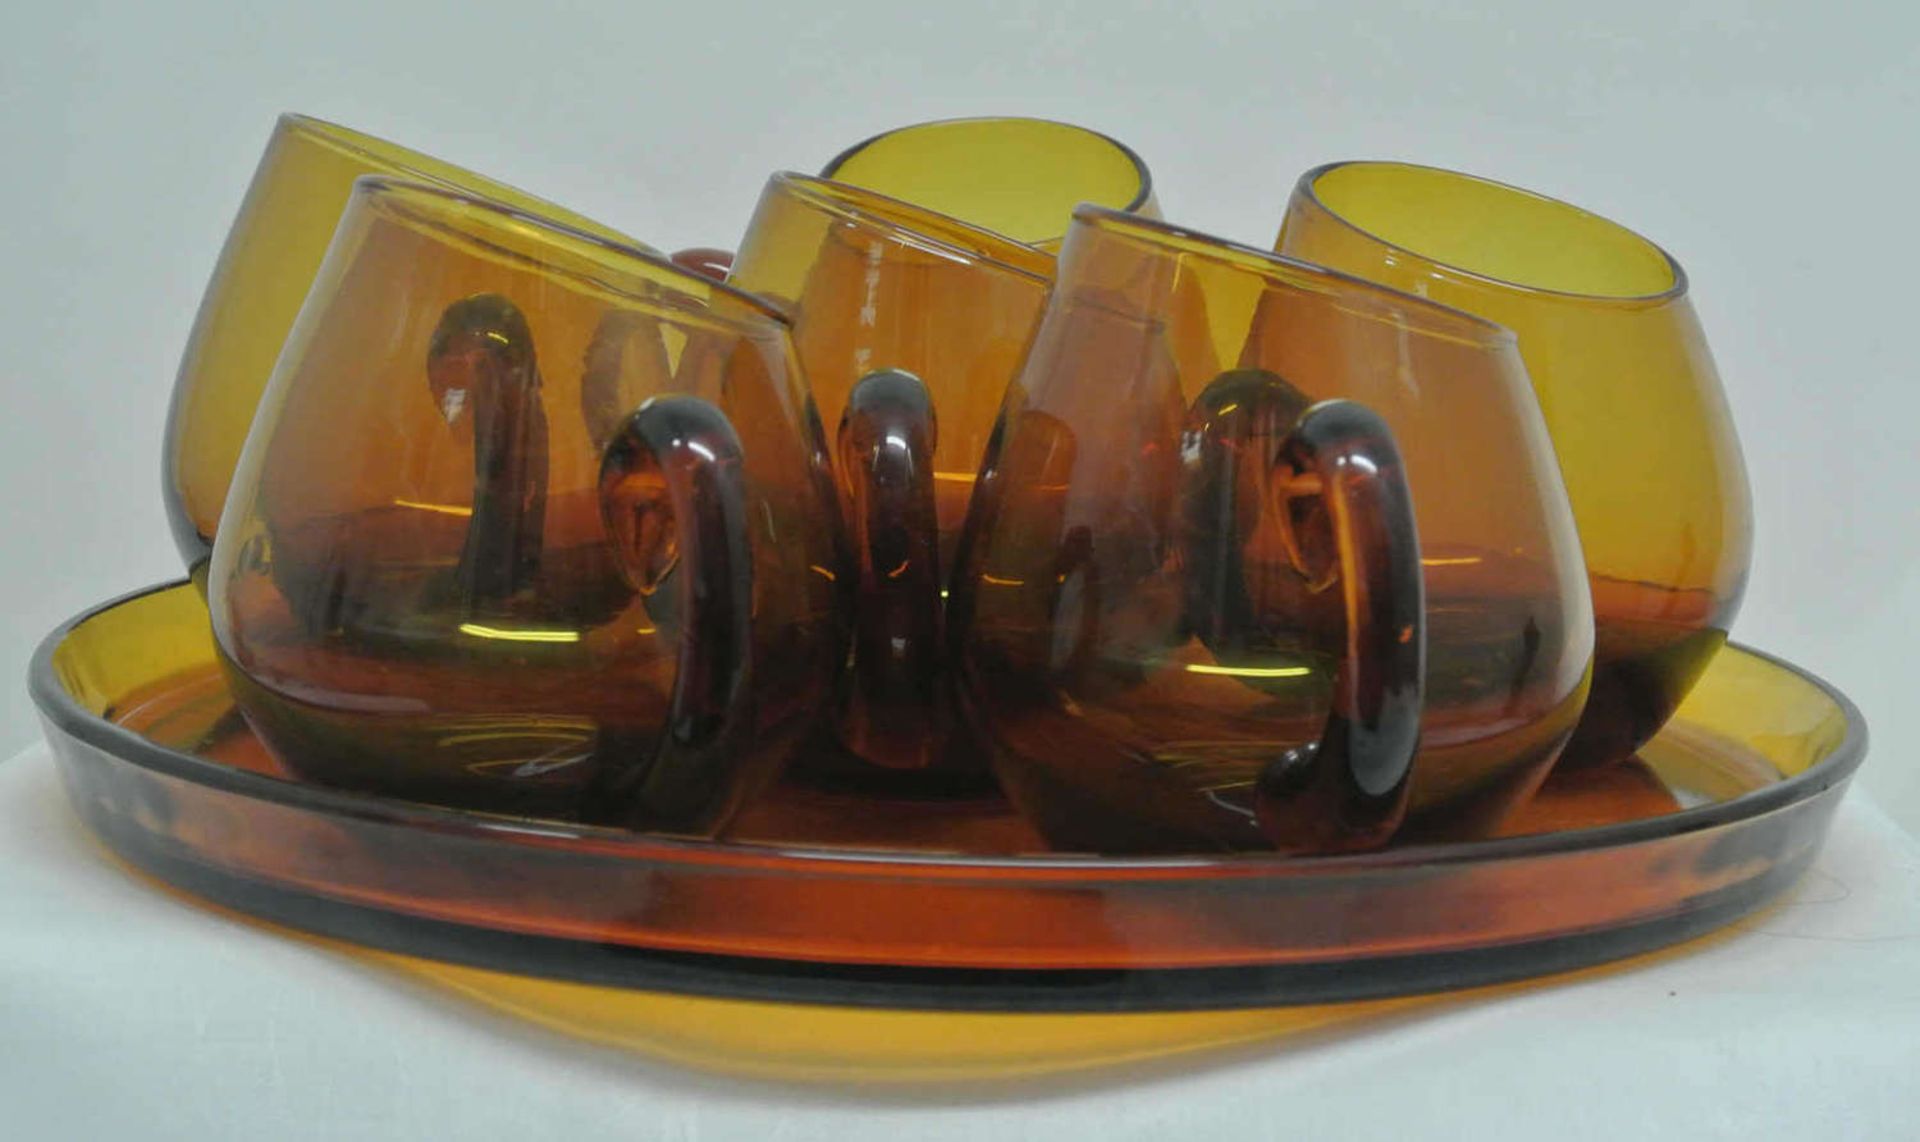 60er Jahre Gläser, ausgefallene schräg abgeschliffene honigfarbe Rauchgläser auf einem